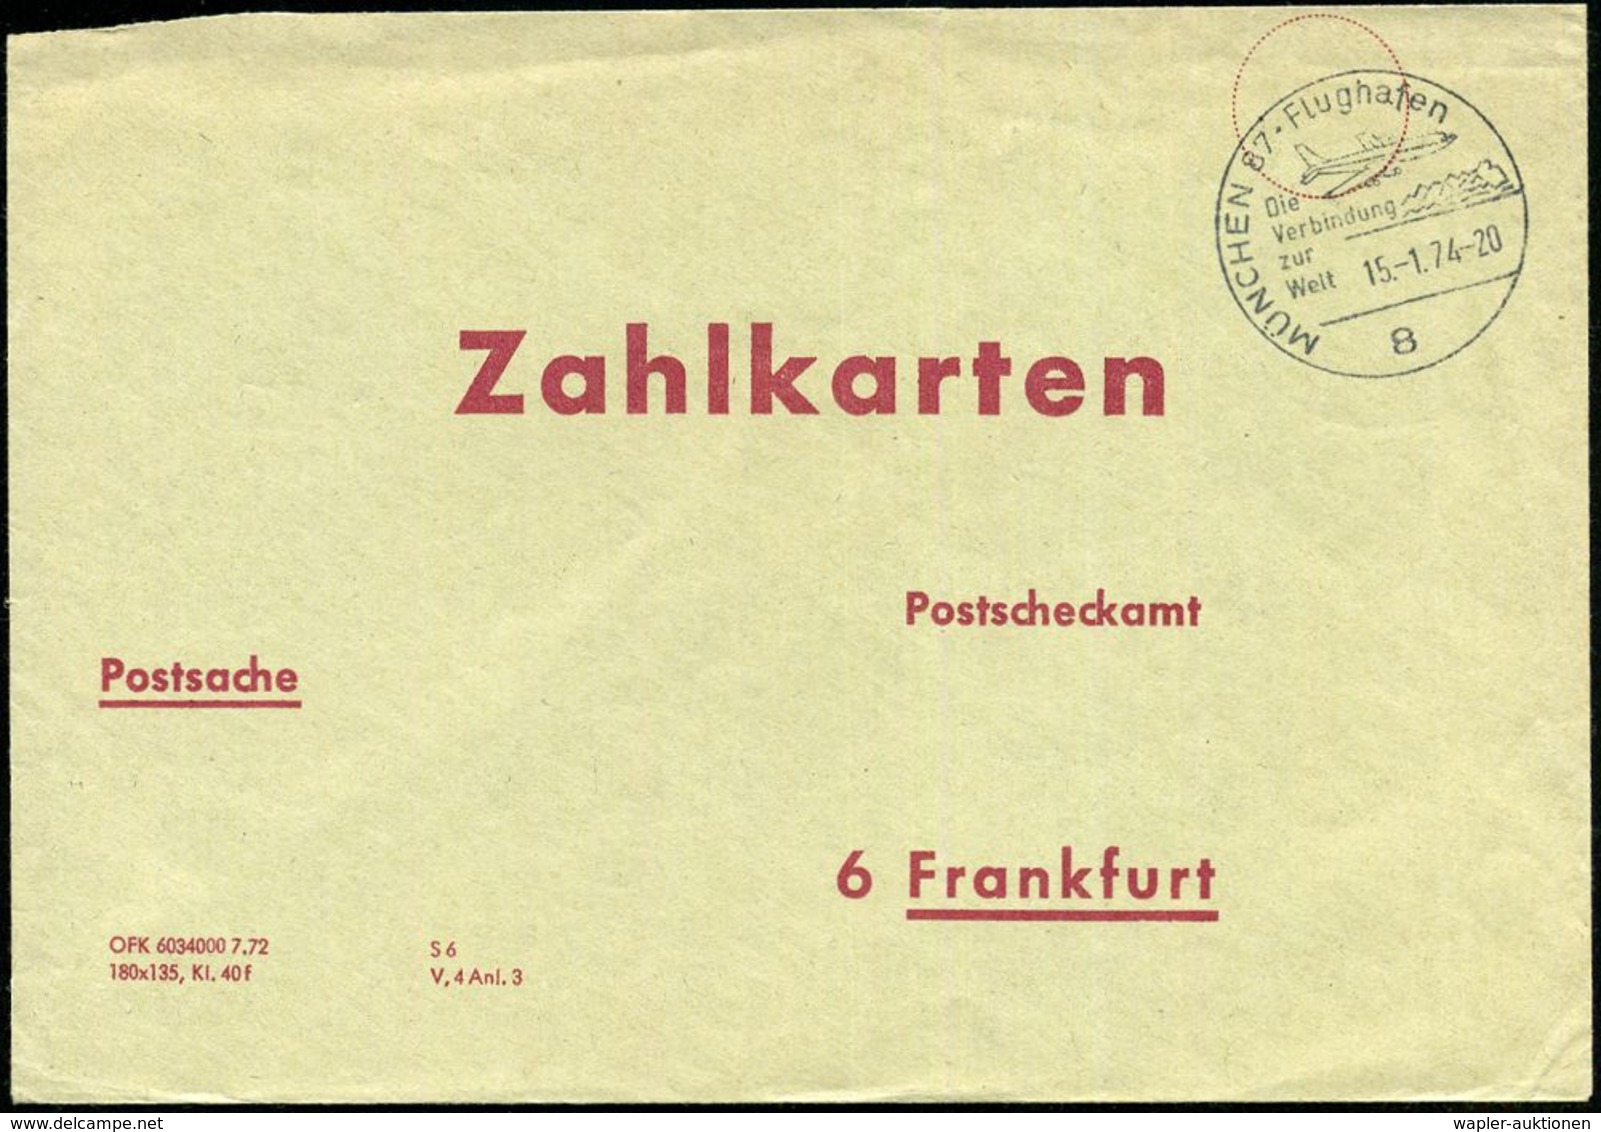 8 MÜNCHEN 87 - Flughafen/ Die/ Verbindung/ Zur/ Welt 1974 (15.1.) HWSt = Ziviljet Auf Psch-Innendienst-Bf.: Zahlkarten P - Andere (Lucht)